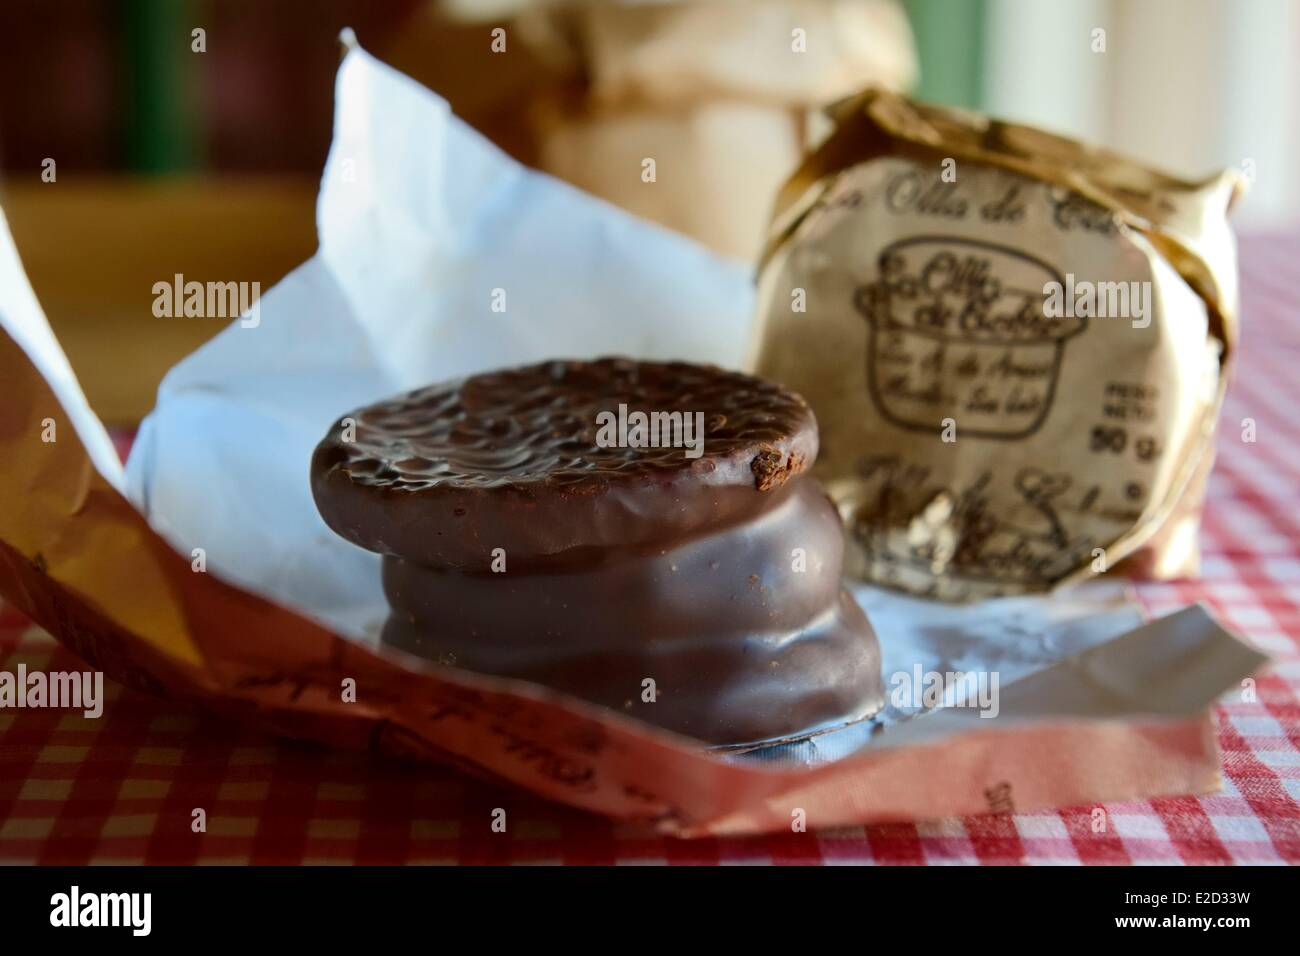 Argentina Buenos Aires San Antonio de Areco chocolate artesano La Olla de Cobre  la gran especialidad argentina Fotografía de stock - Alamy